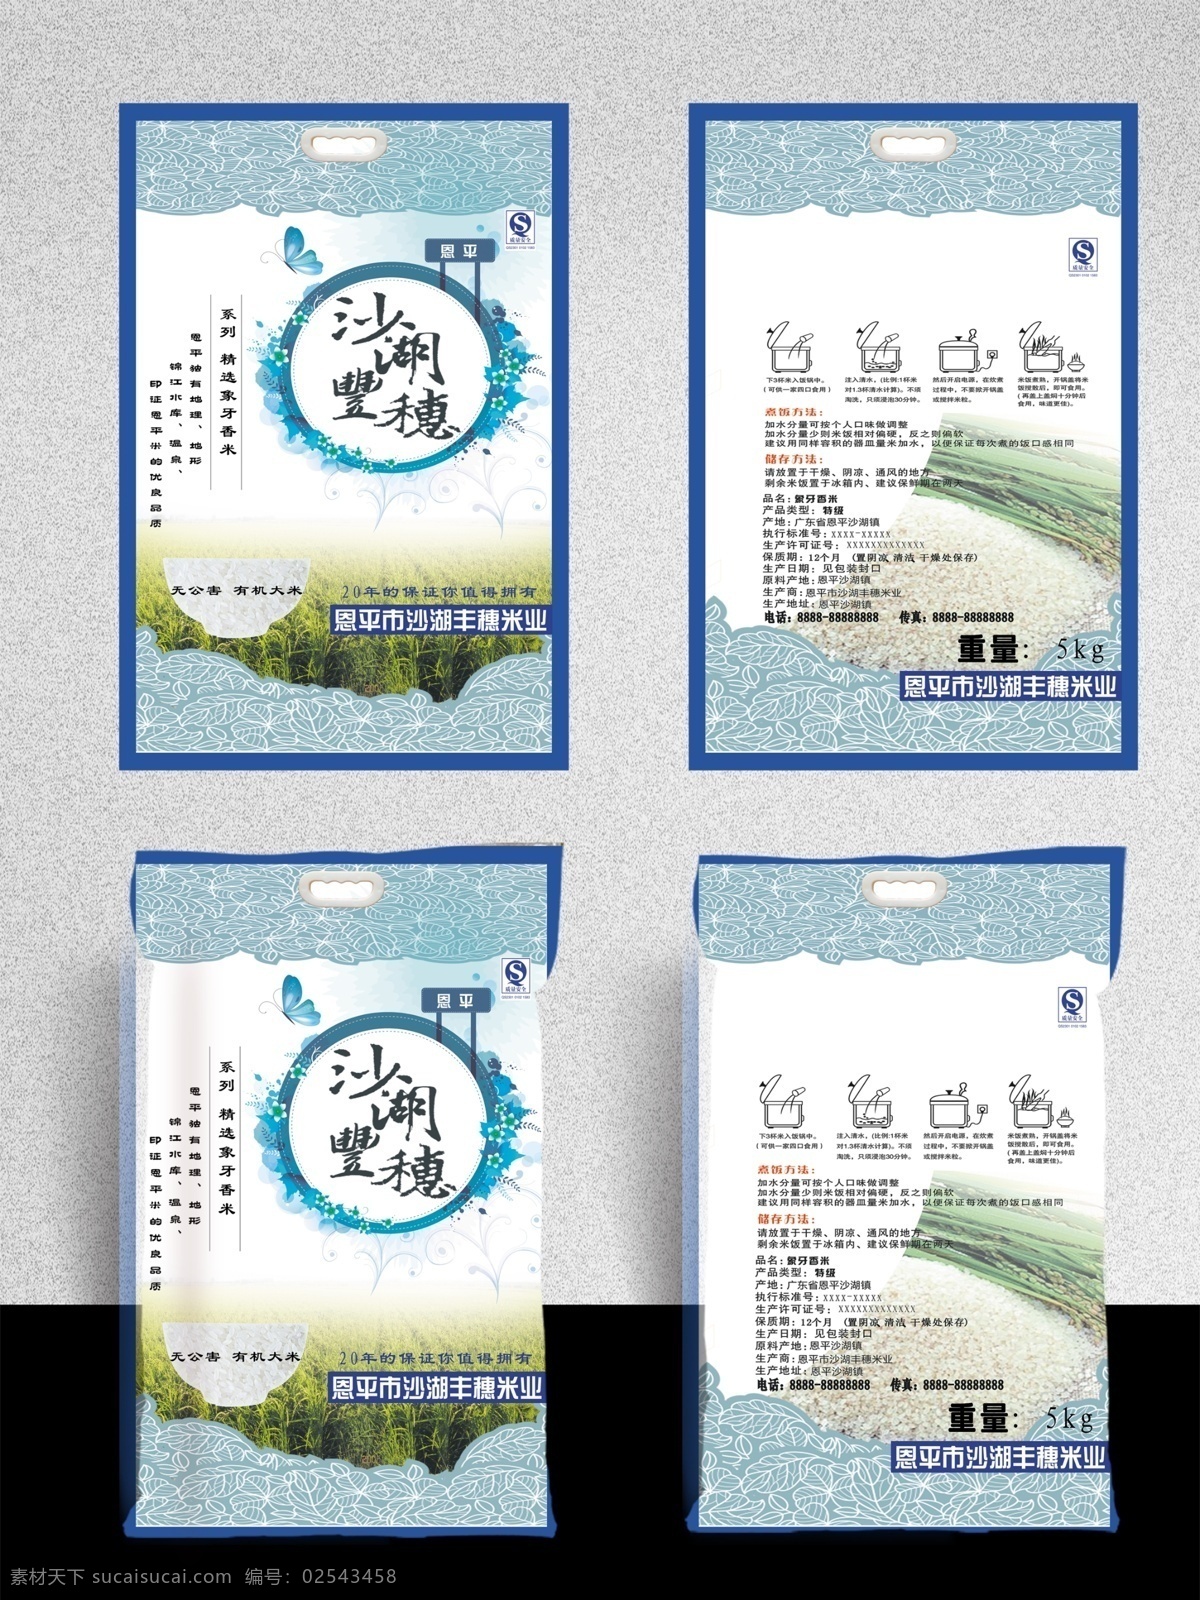 成品1 米袋 袋米 稻谷 耕种 绿色健康 农家米 kg 米袋子 包装 5kg 白色